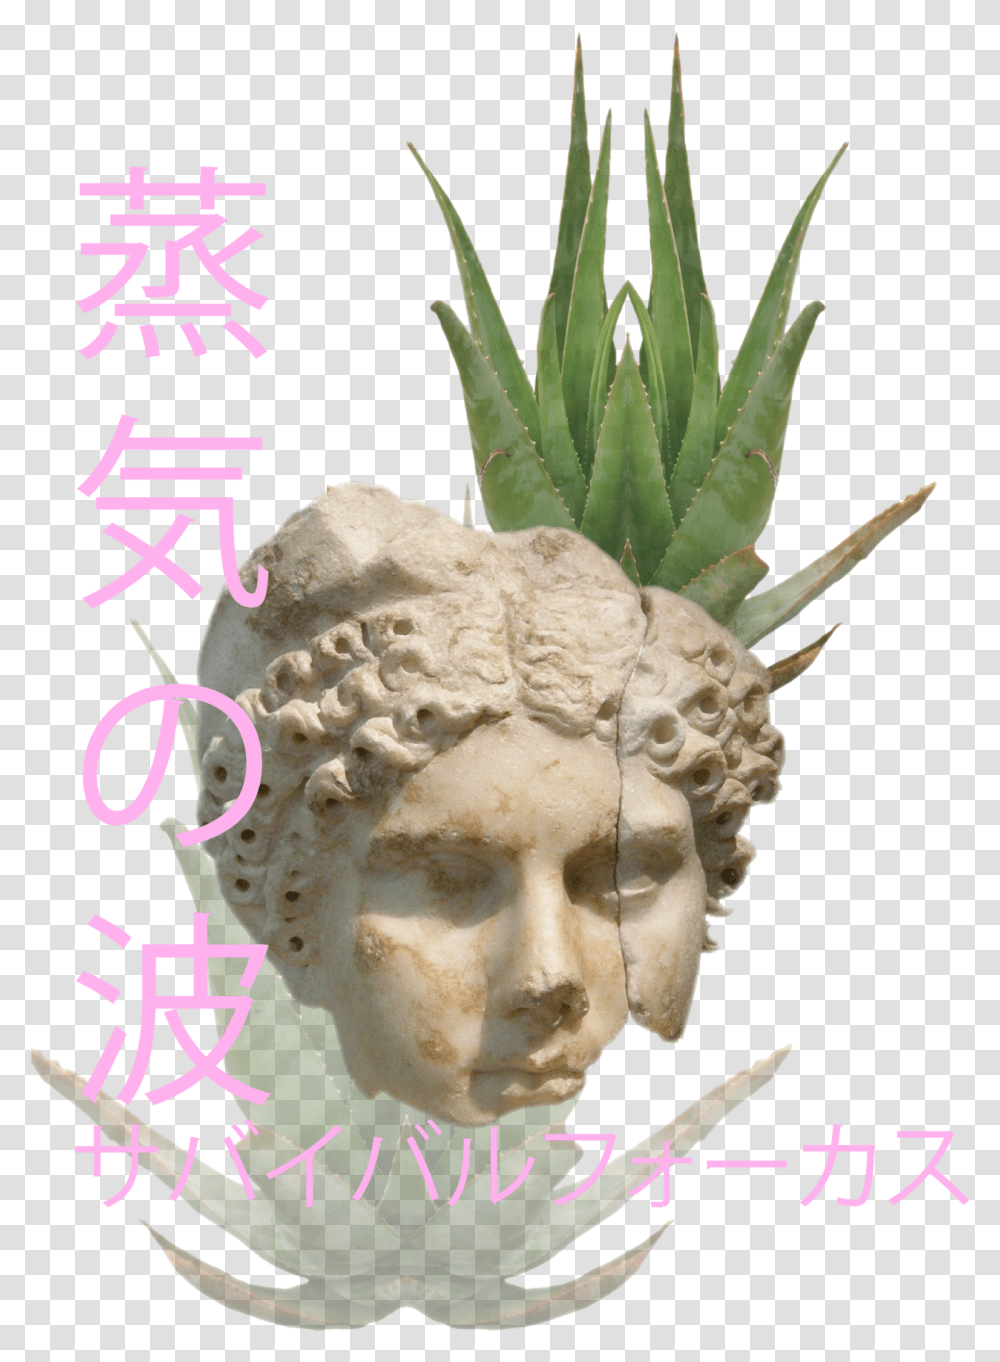 Mask, Plant, Potted Plant, Vase, Jar Transparent Png